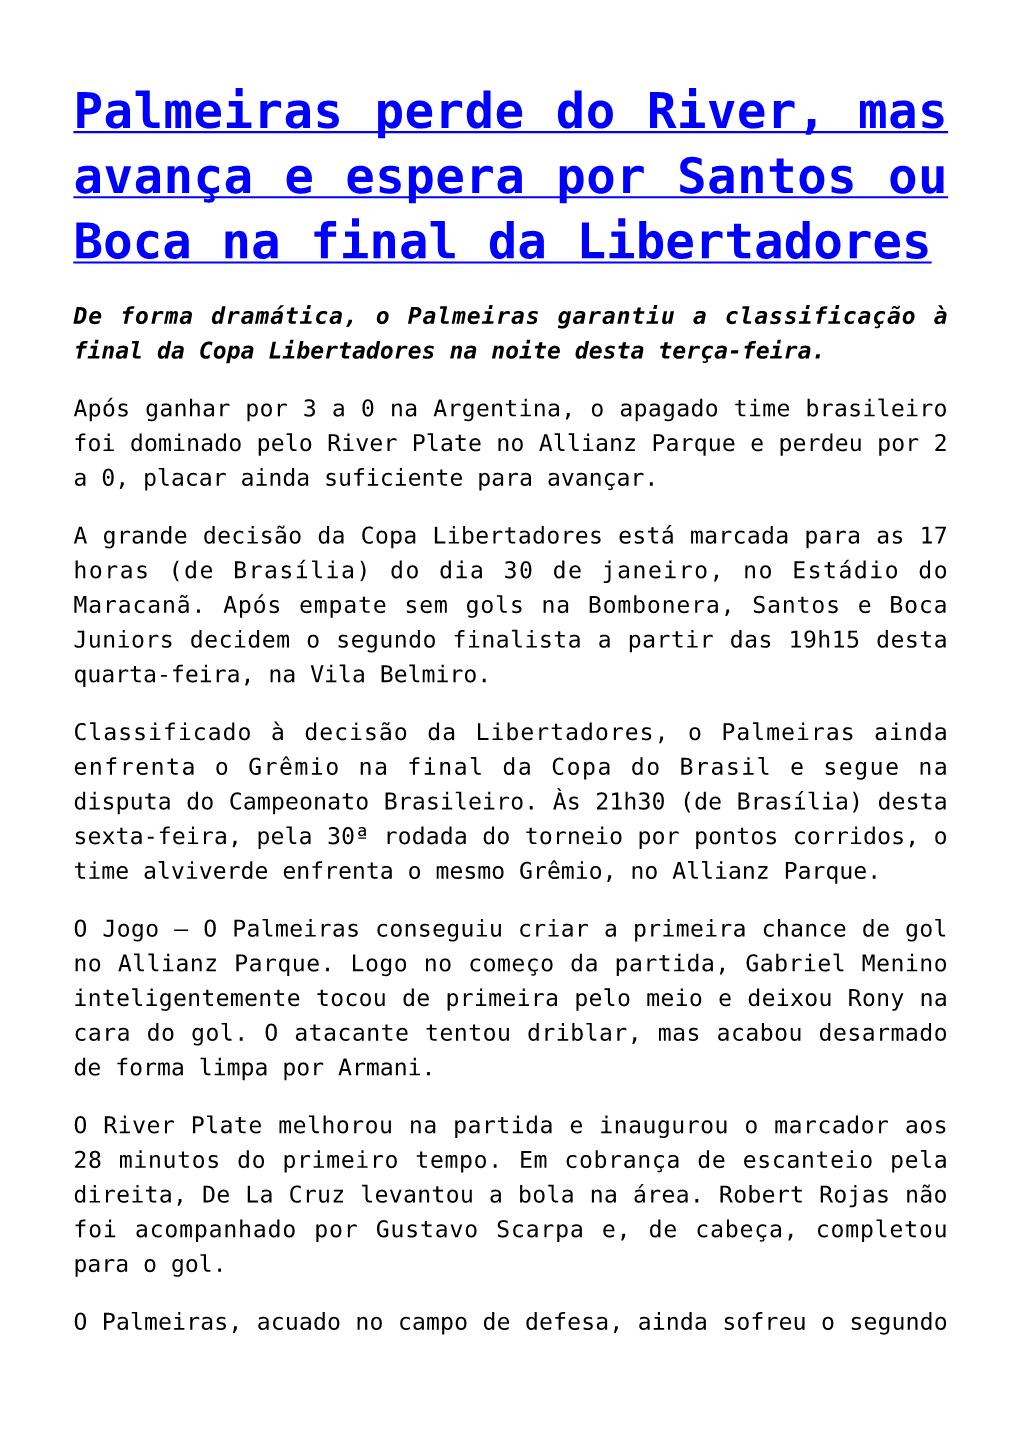 Palmeiras Perde Do River, Mas Avança E Espera Por Santos Ou Boca Na Final Da Libertadores